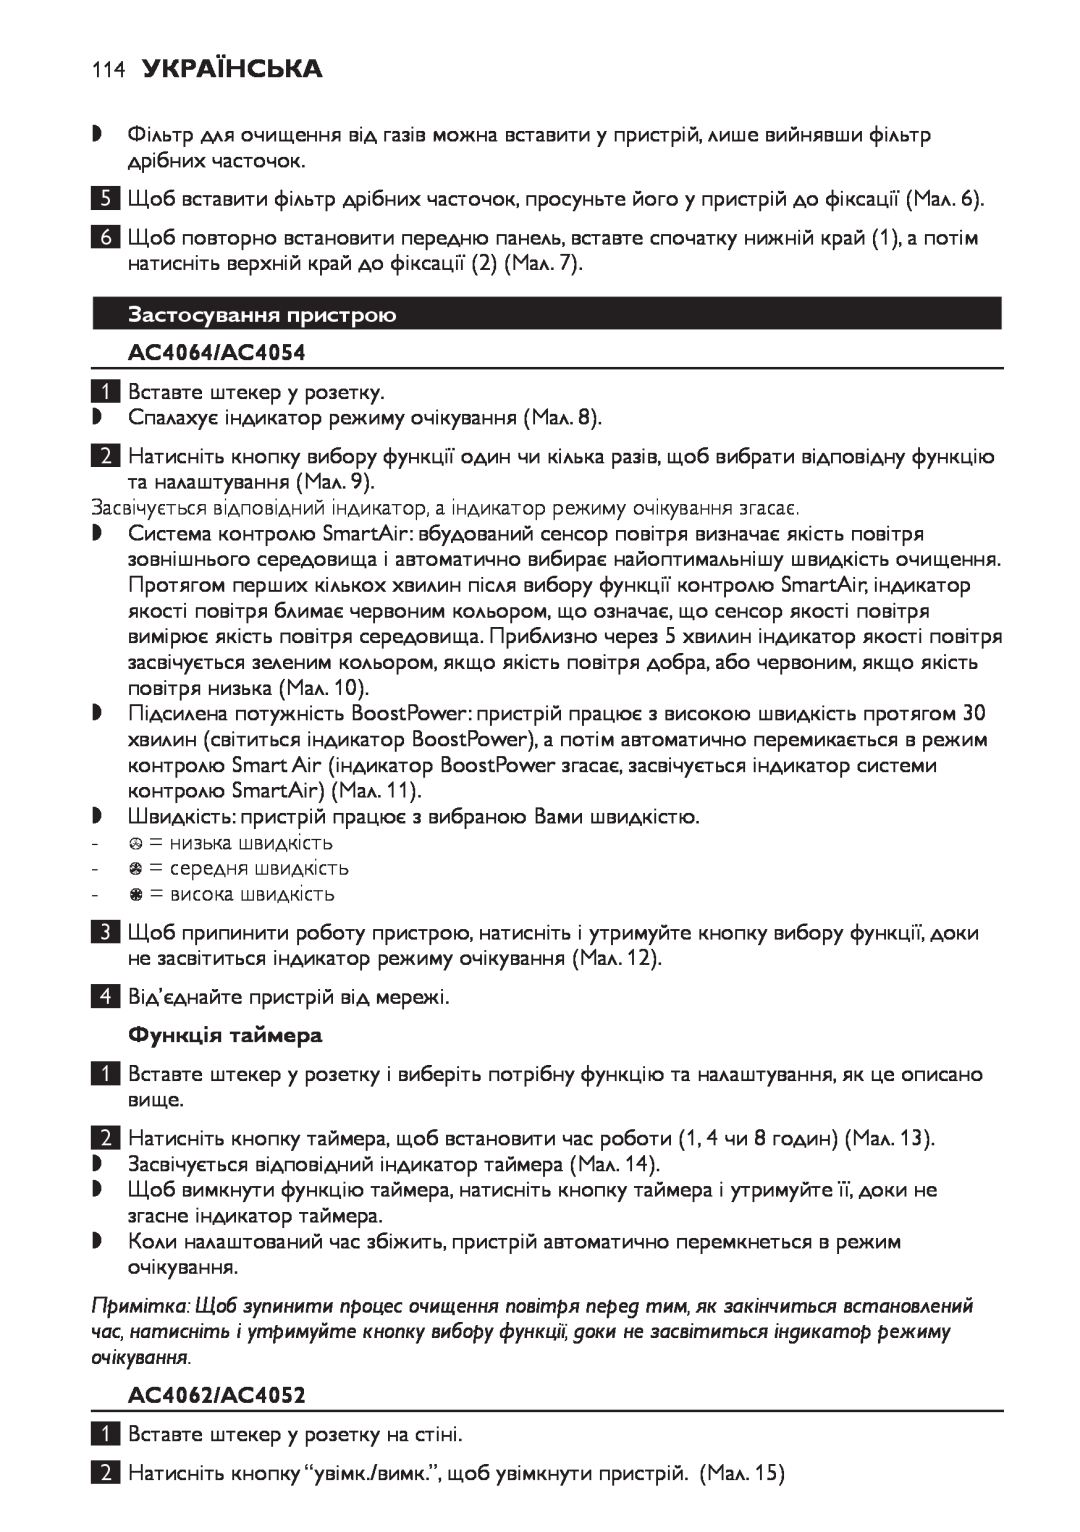 Philips manual 114Українська, Застосування пристрою, Функція таймера, AC4064/AC4054, AC4062/AC4052 